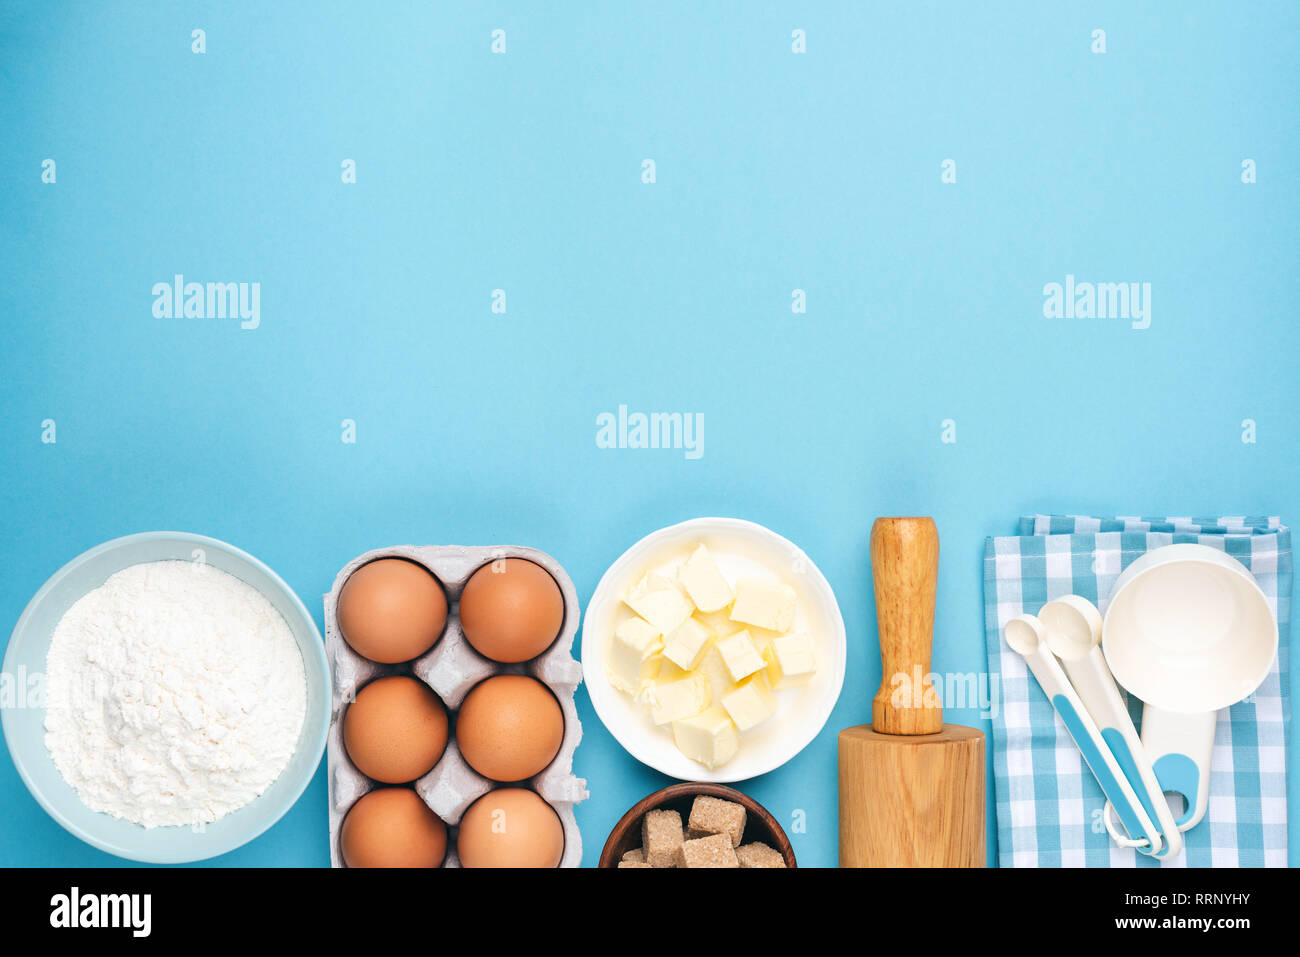 Ingrédients pour la cuisson ou la cuisson sur fond bleu. Les œufs, beurre, farine, cuillères à mesurer et de rouleau à pâtisserie. Pin up style rétro ou zone de nourriture de cuisine Banque D'Images